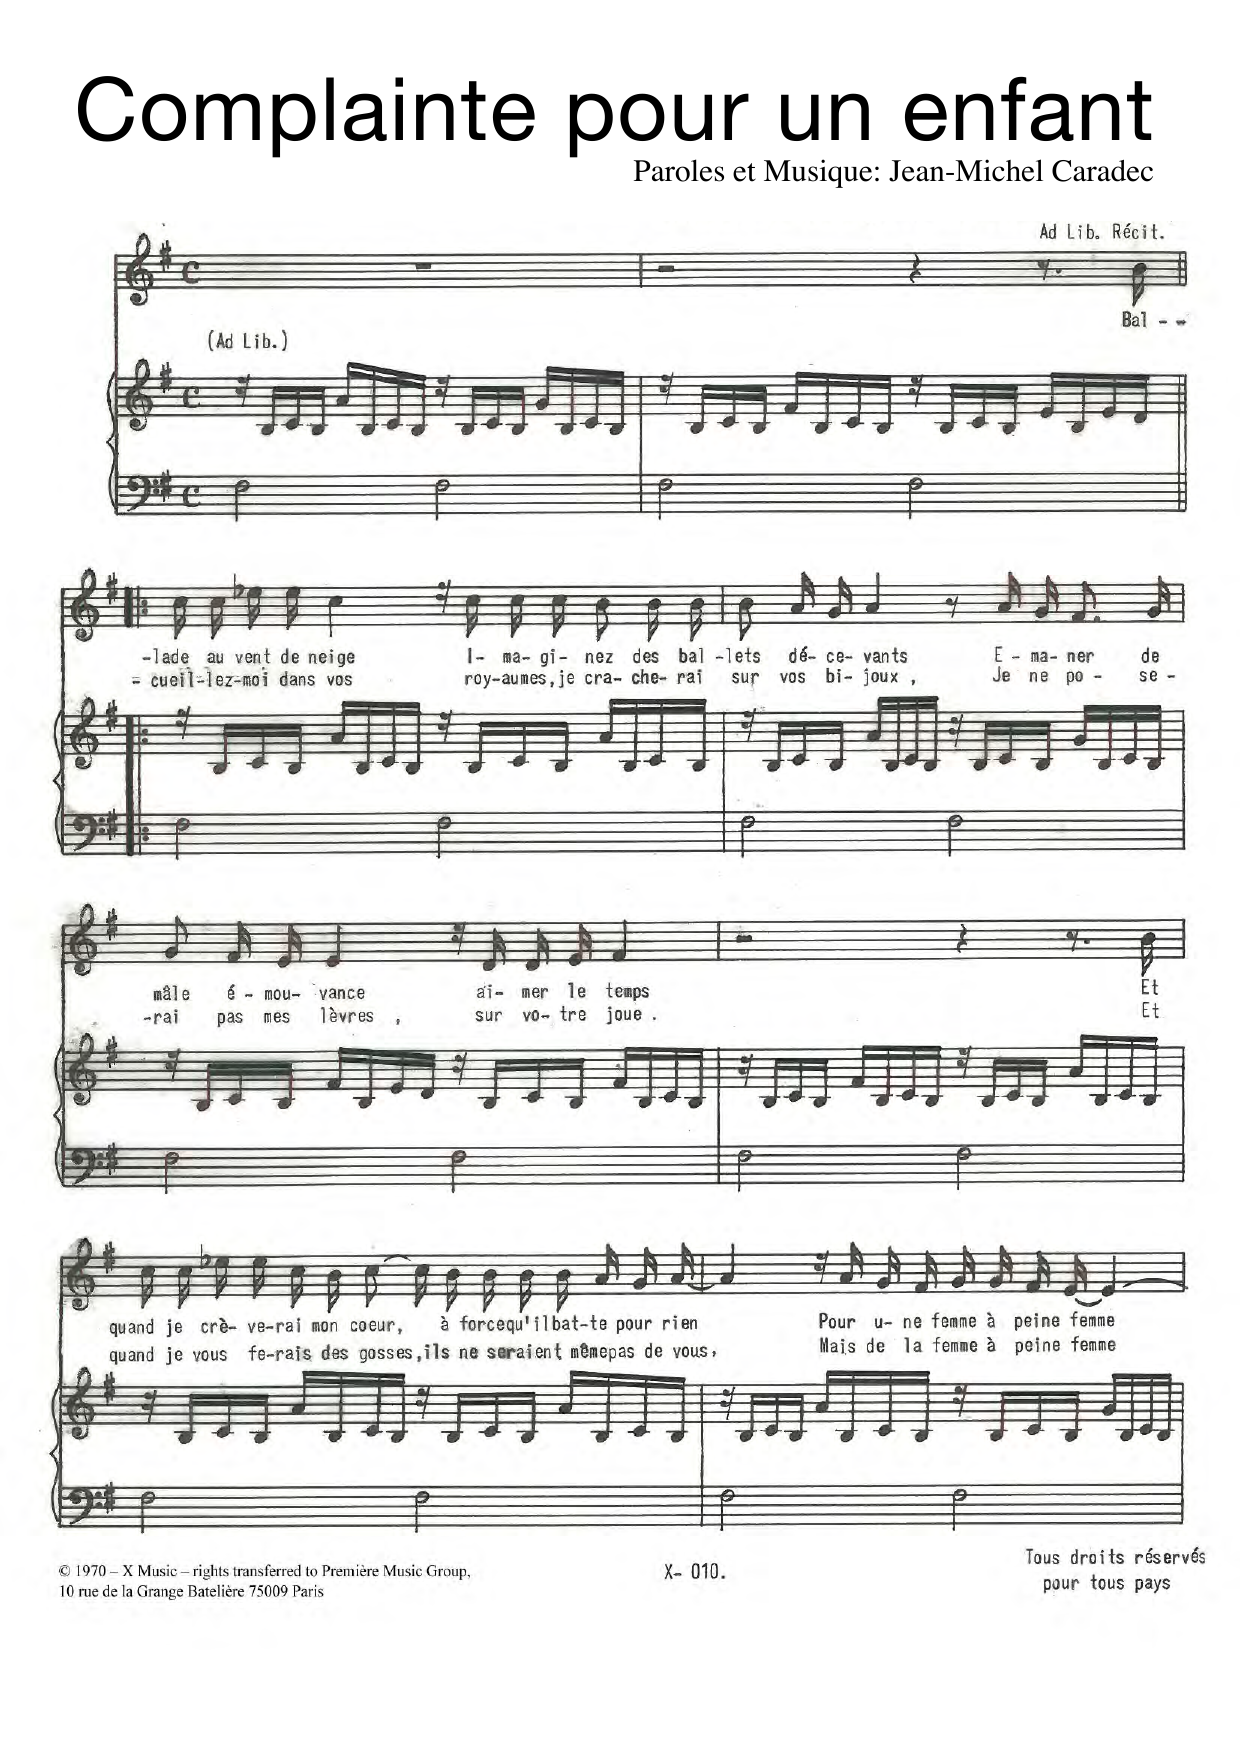 Jean-Michel Caradec Complainte Pour Un Enfant Sheet Music Notes & Chords for Piano & Vocal - Download or Print PDF